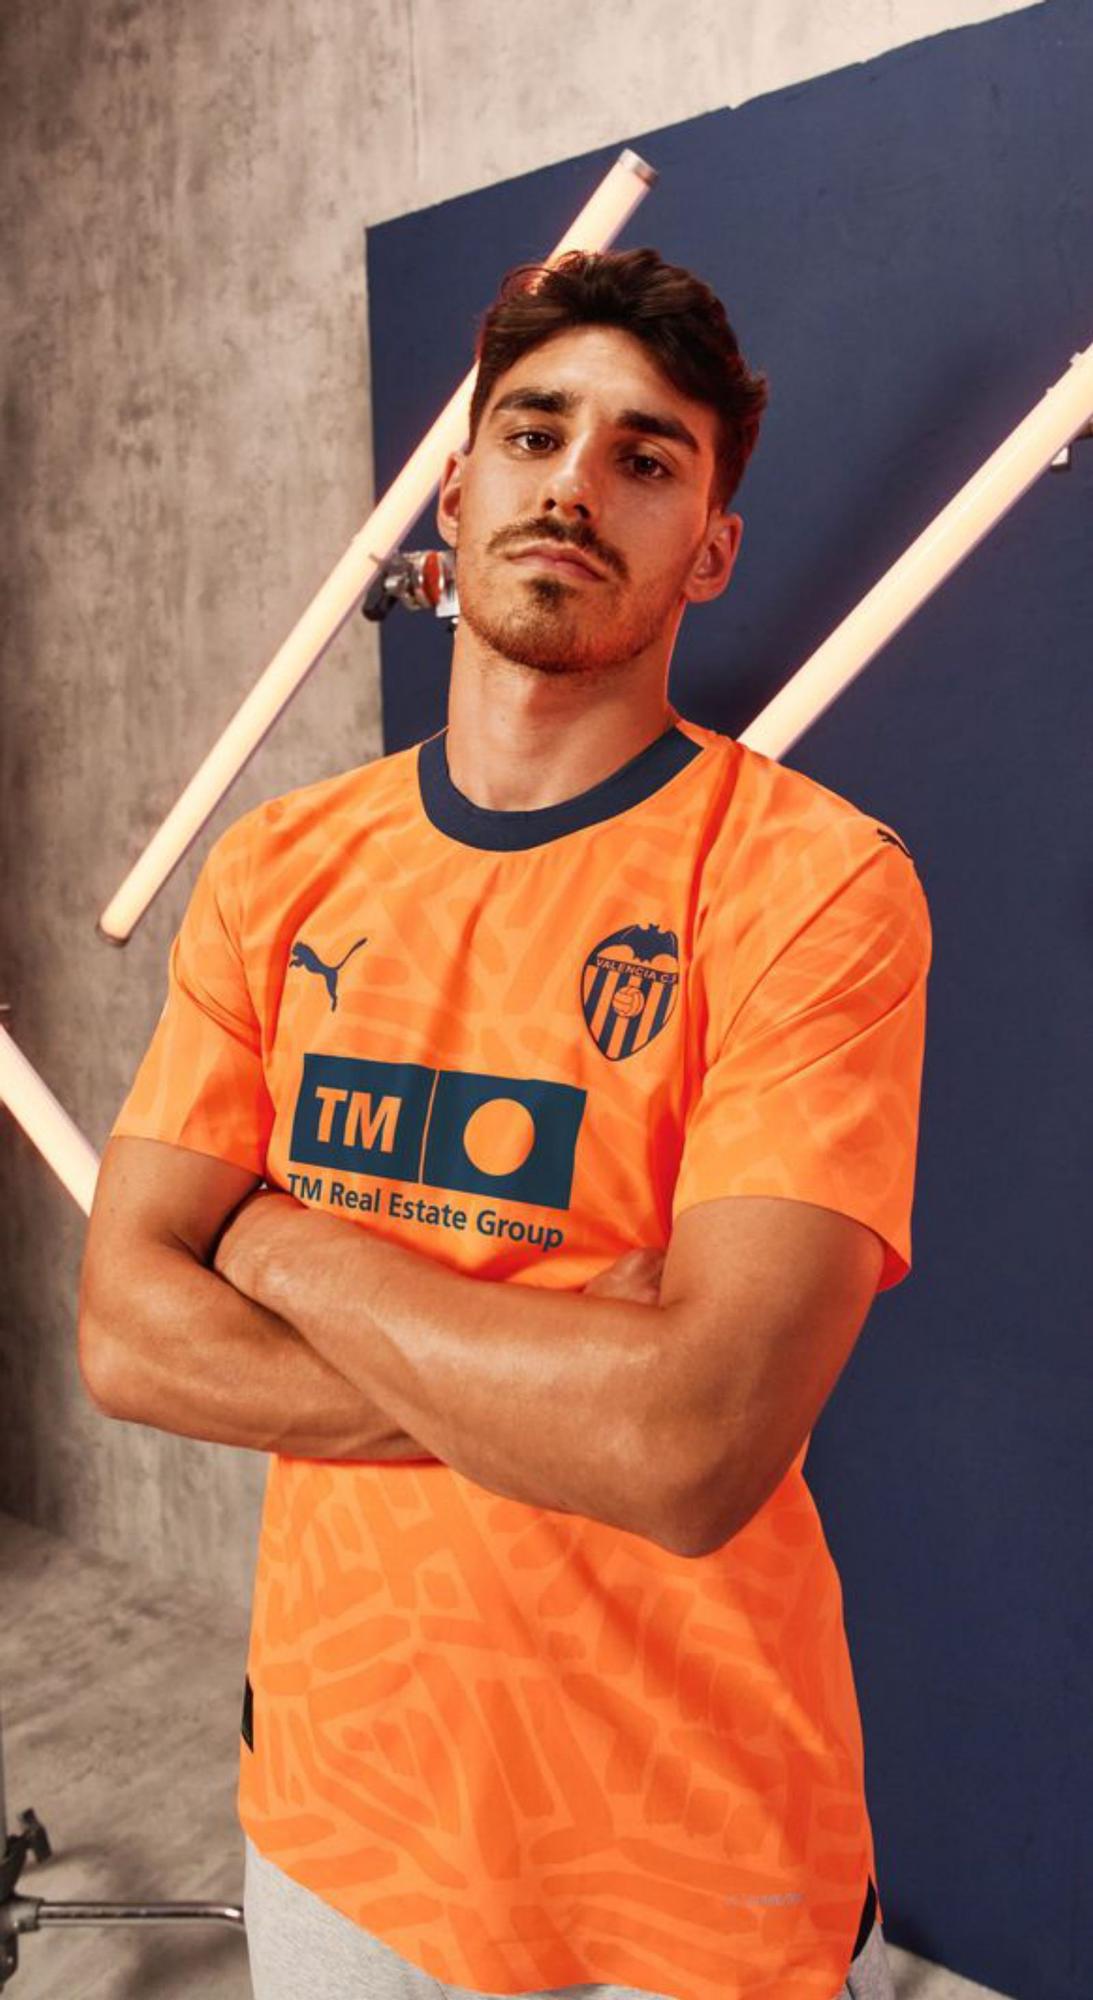 Camiseta Valencia Naranja